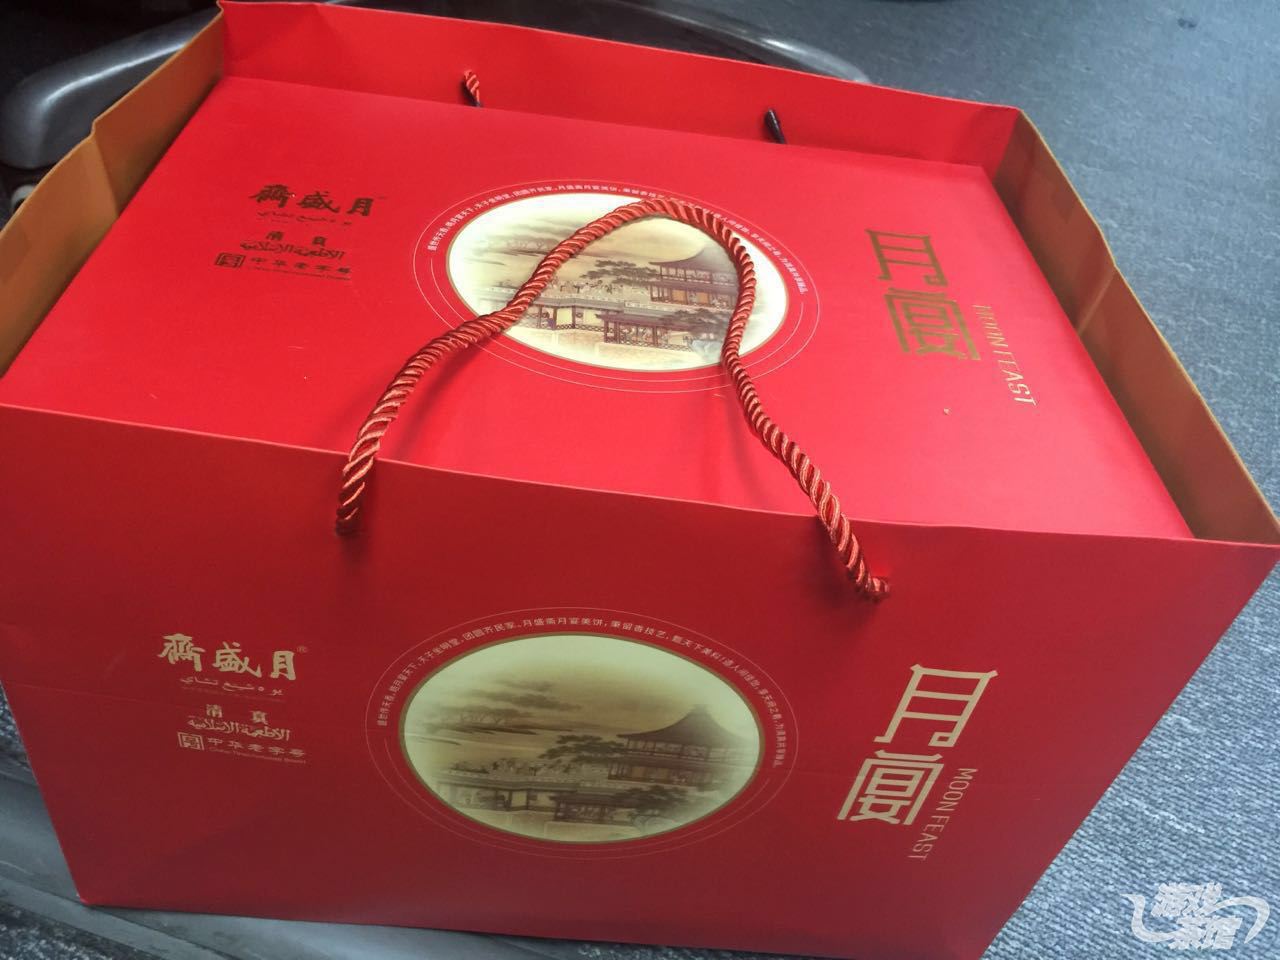 13北京星核动力 齐盛月月饼一箱.png